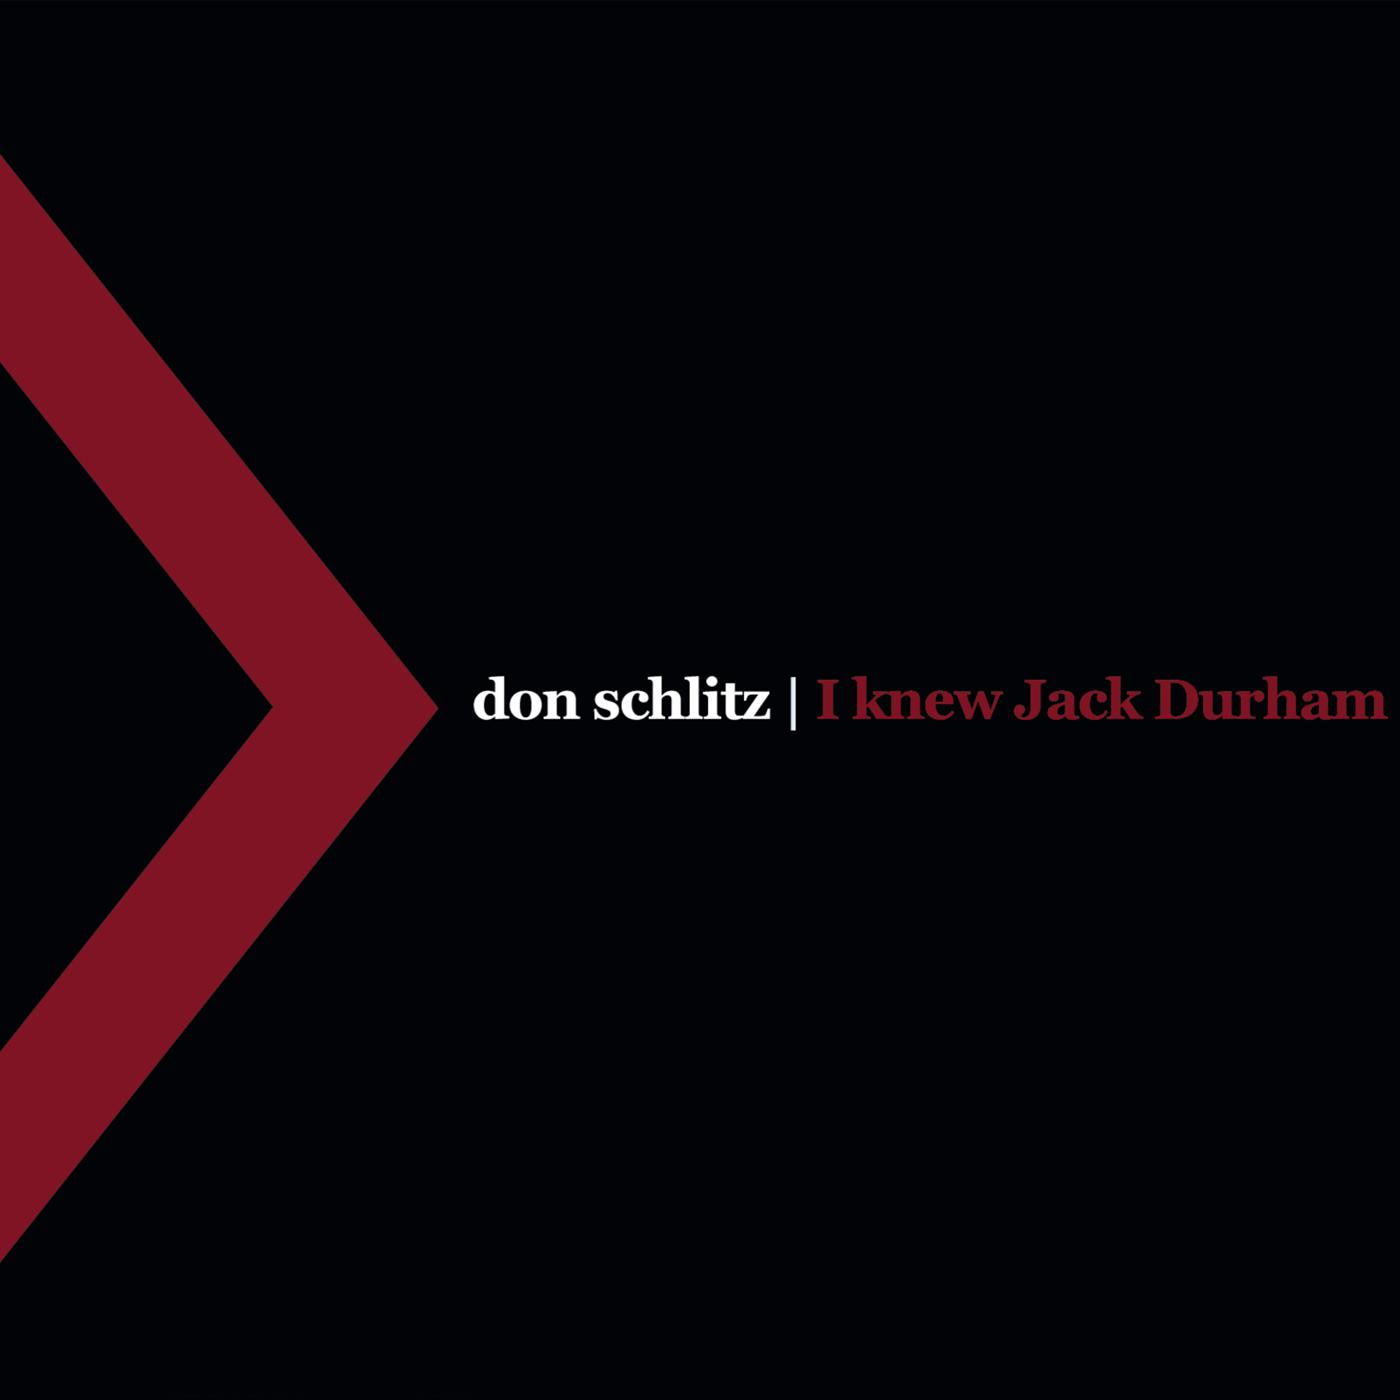 Don Schlitz - Jack Durham